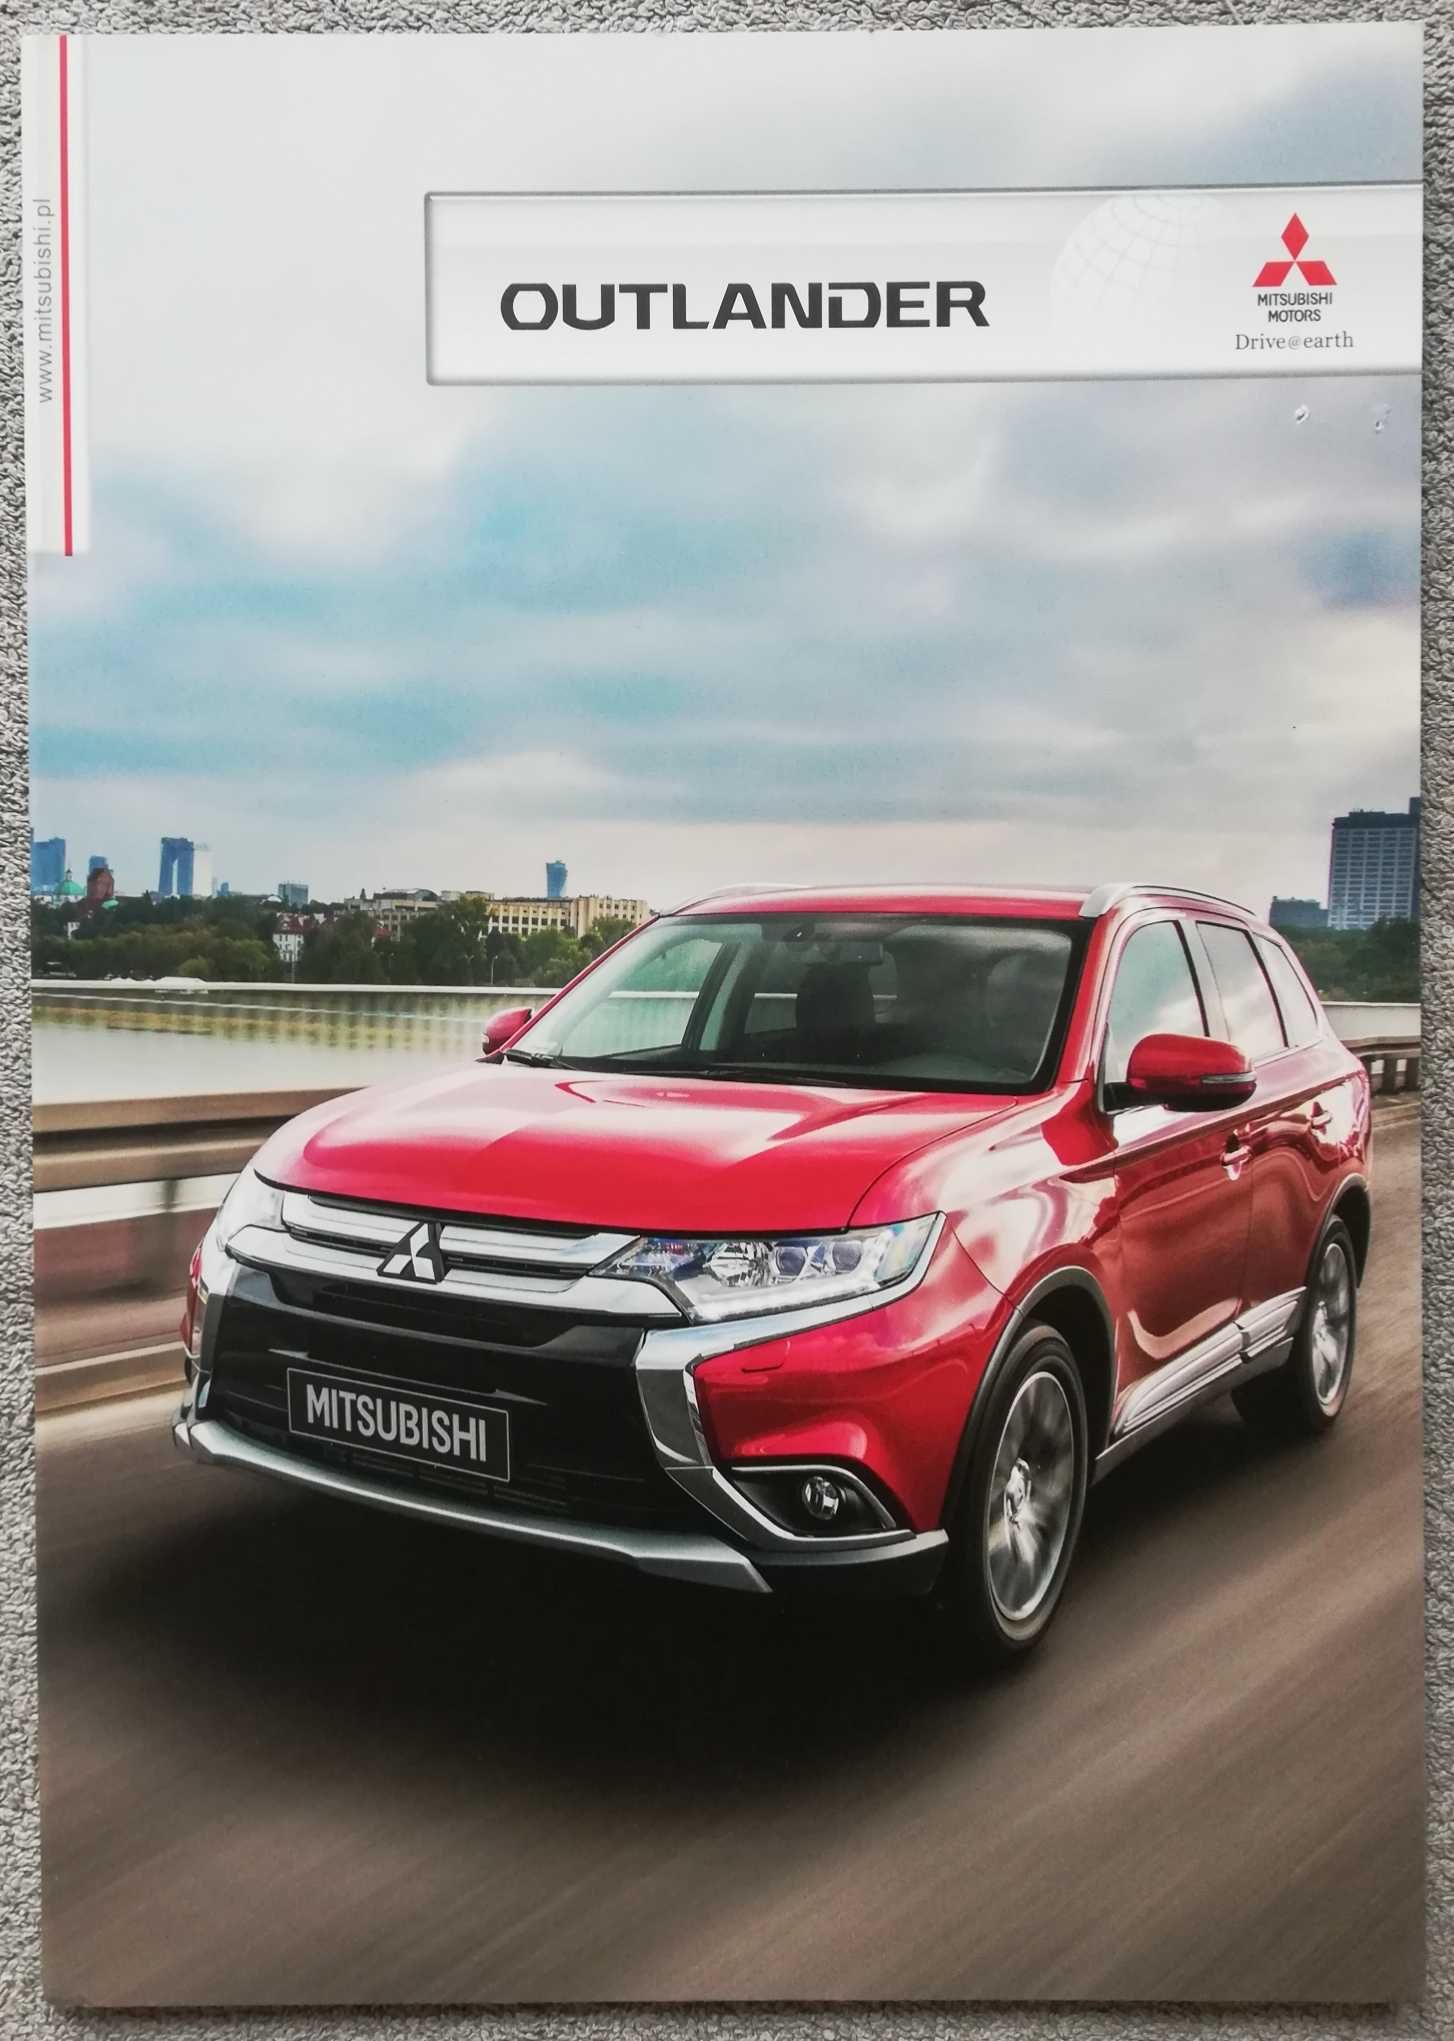 Prospekt Mitsubishi Outlander rok 2016